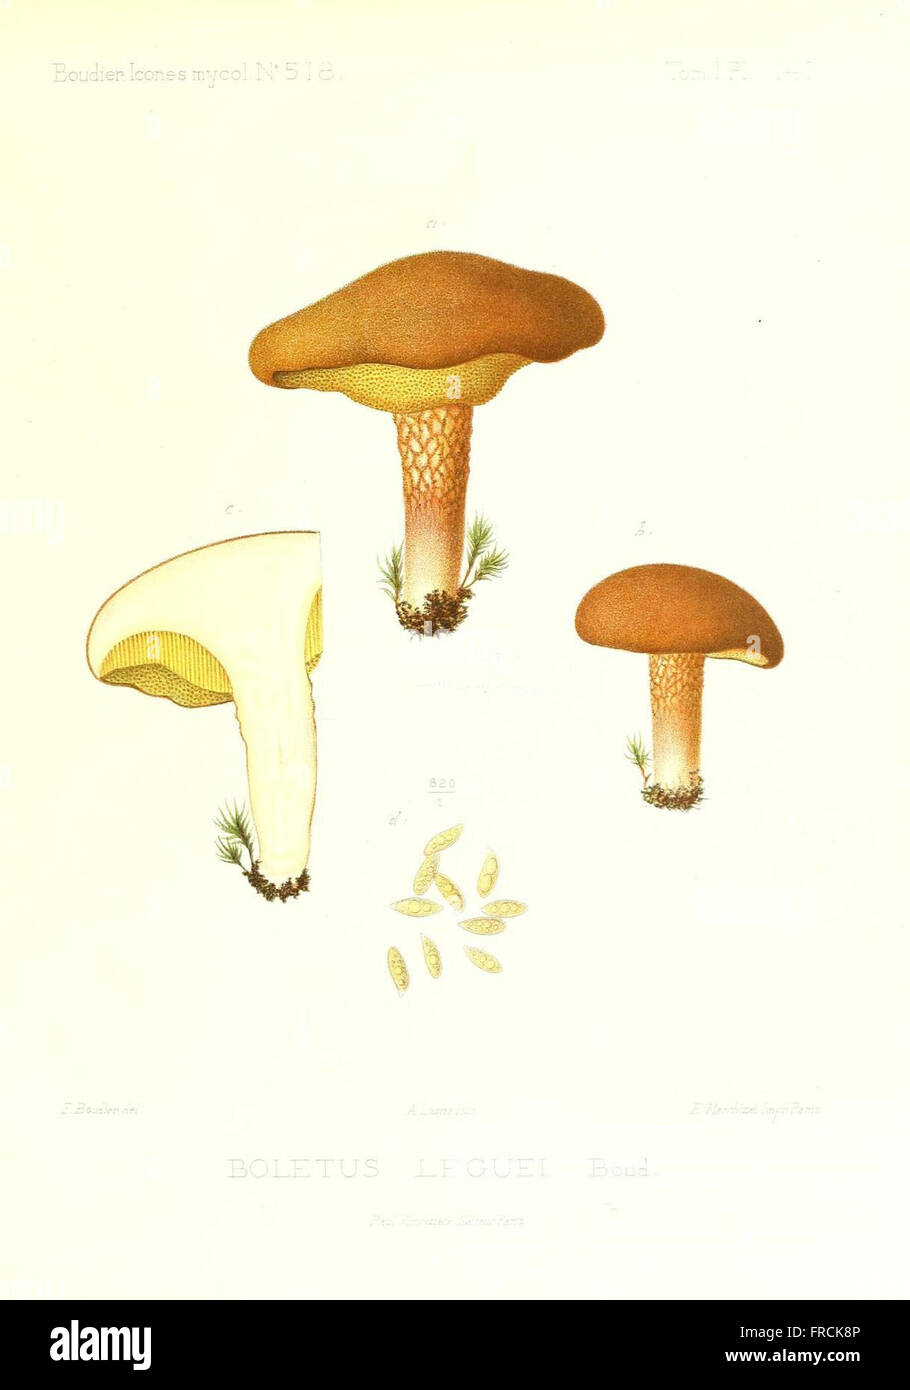 Icones mycologicC3A6, ou Iconographie des champignons de France principalement Discomycetes (Pl. 141) Stock Photo